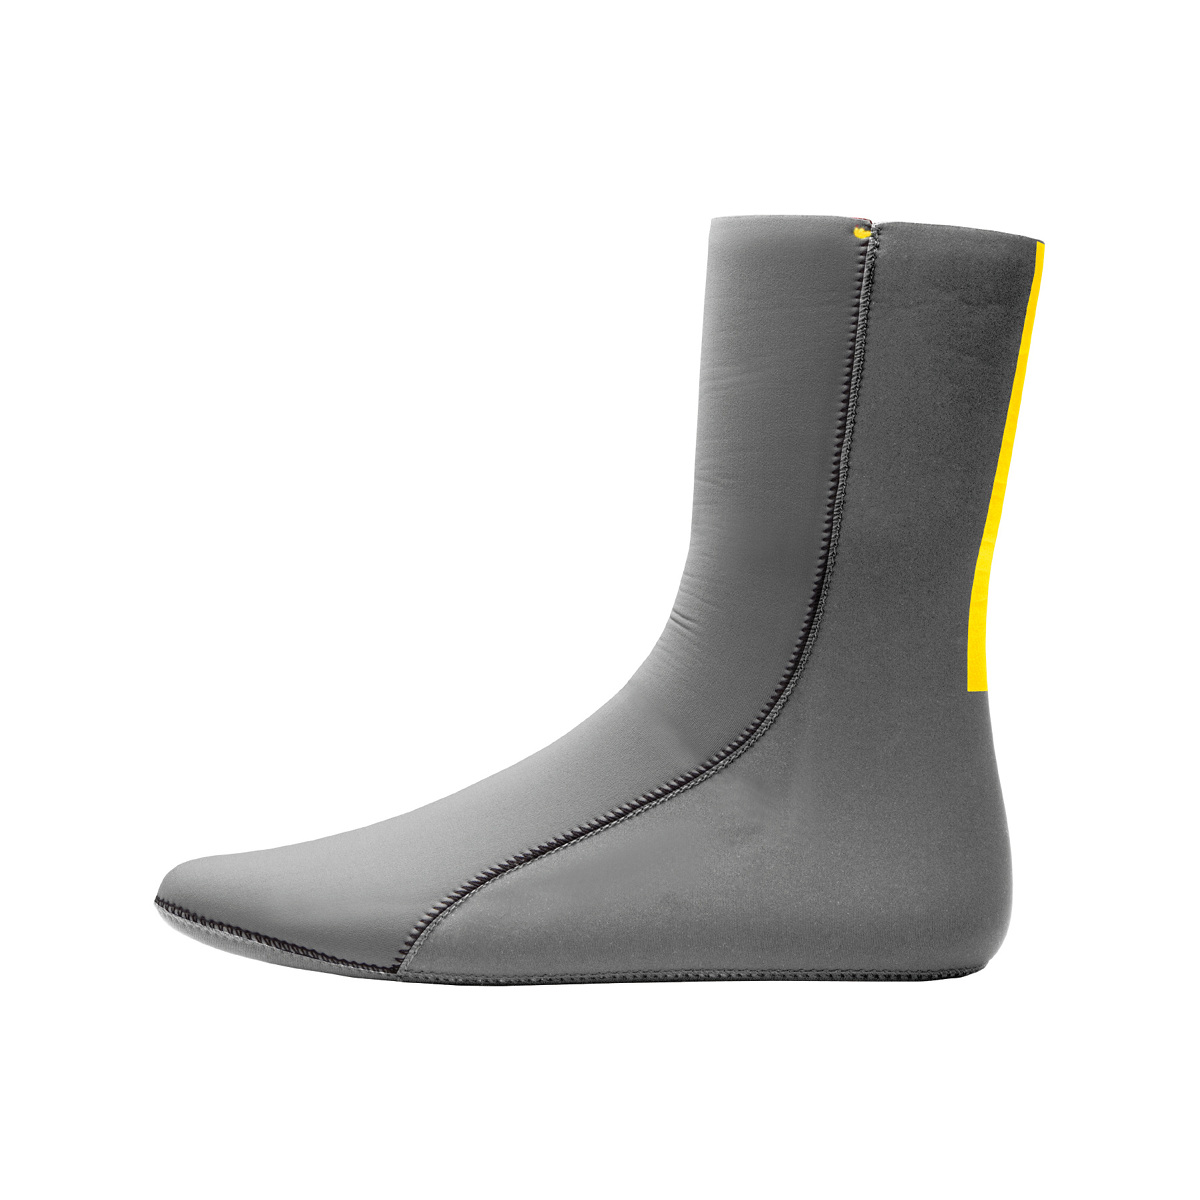 Zhik Superwarm Socks chaussettes néoprène 3mm gris, taille 10-13 US